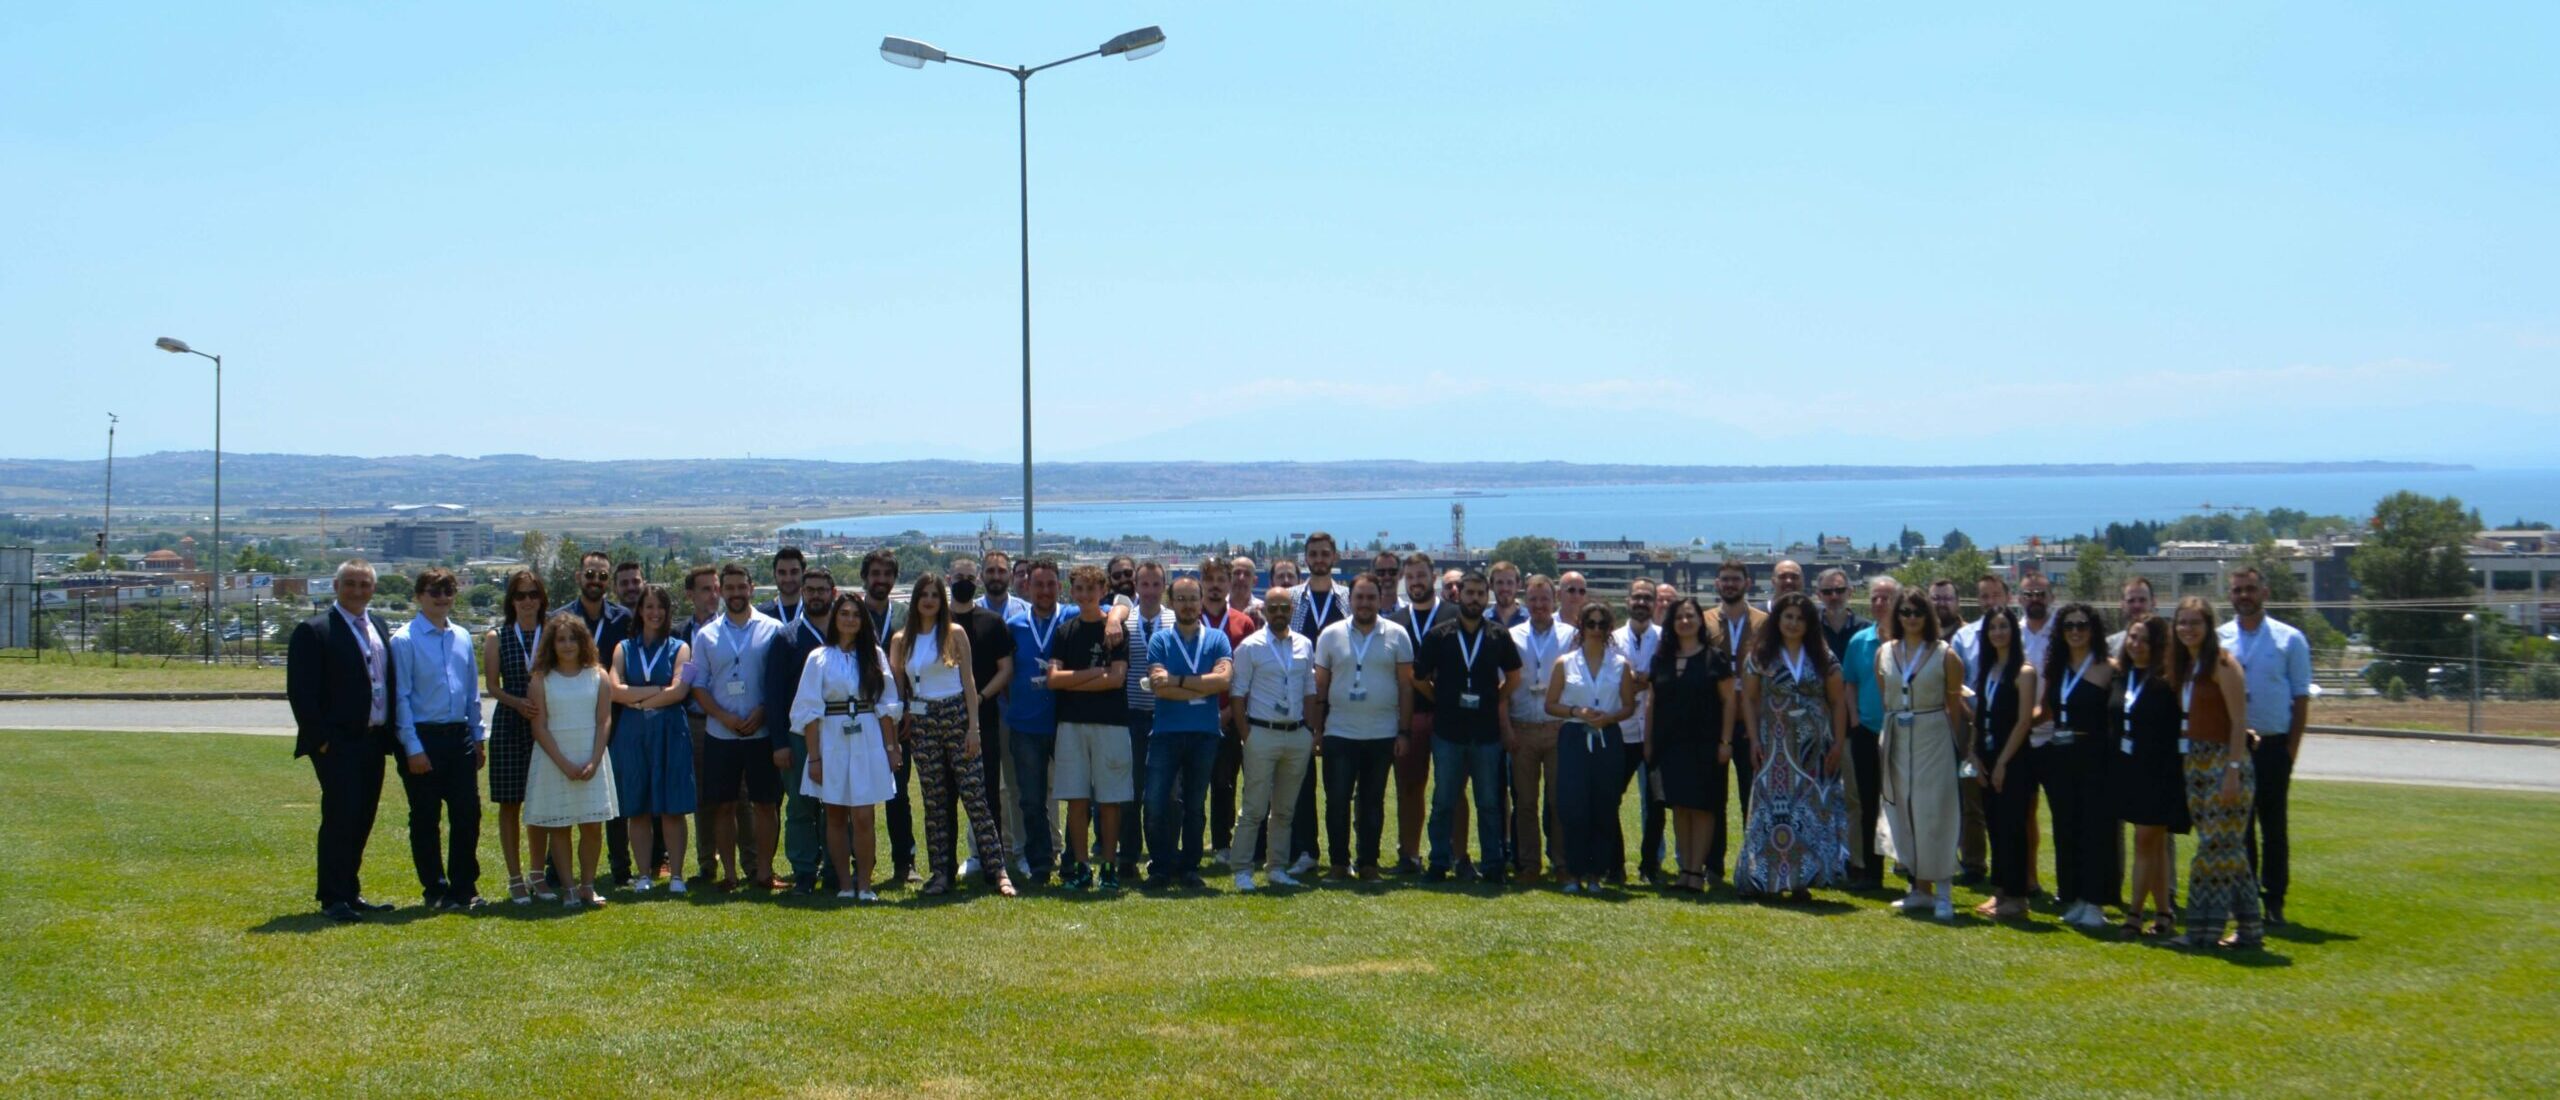 50 Machinarians got together for DEUS Summer Workshop at Noesis, Thessaloniki